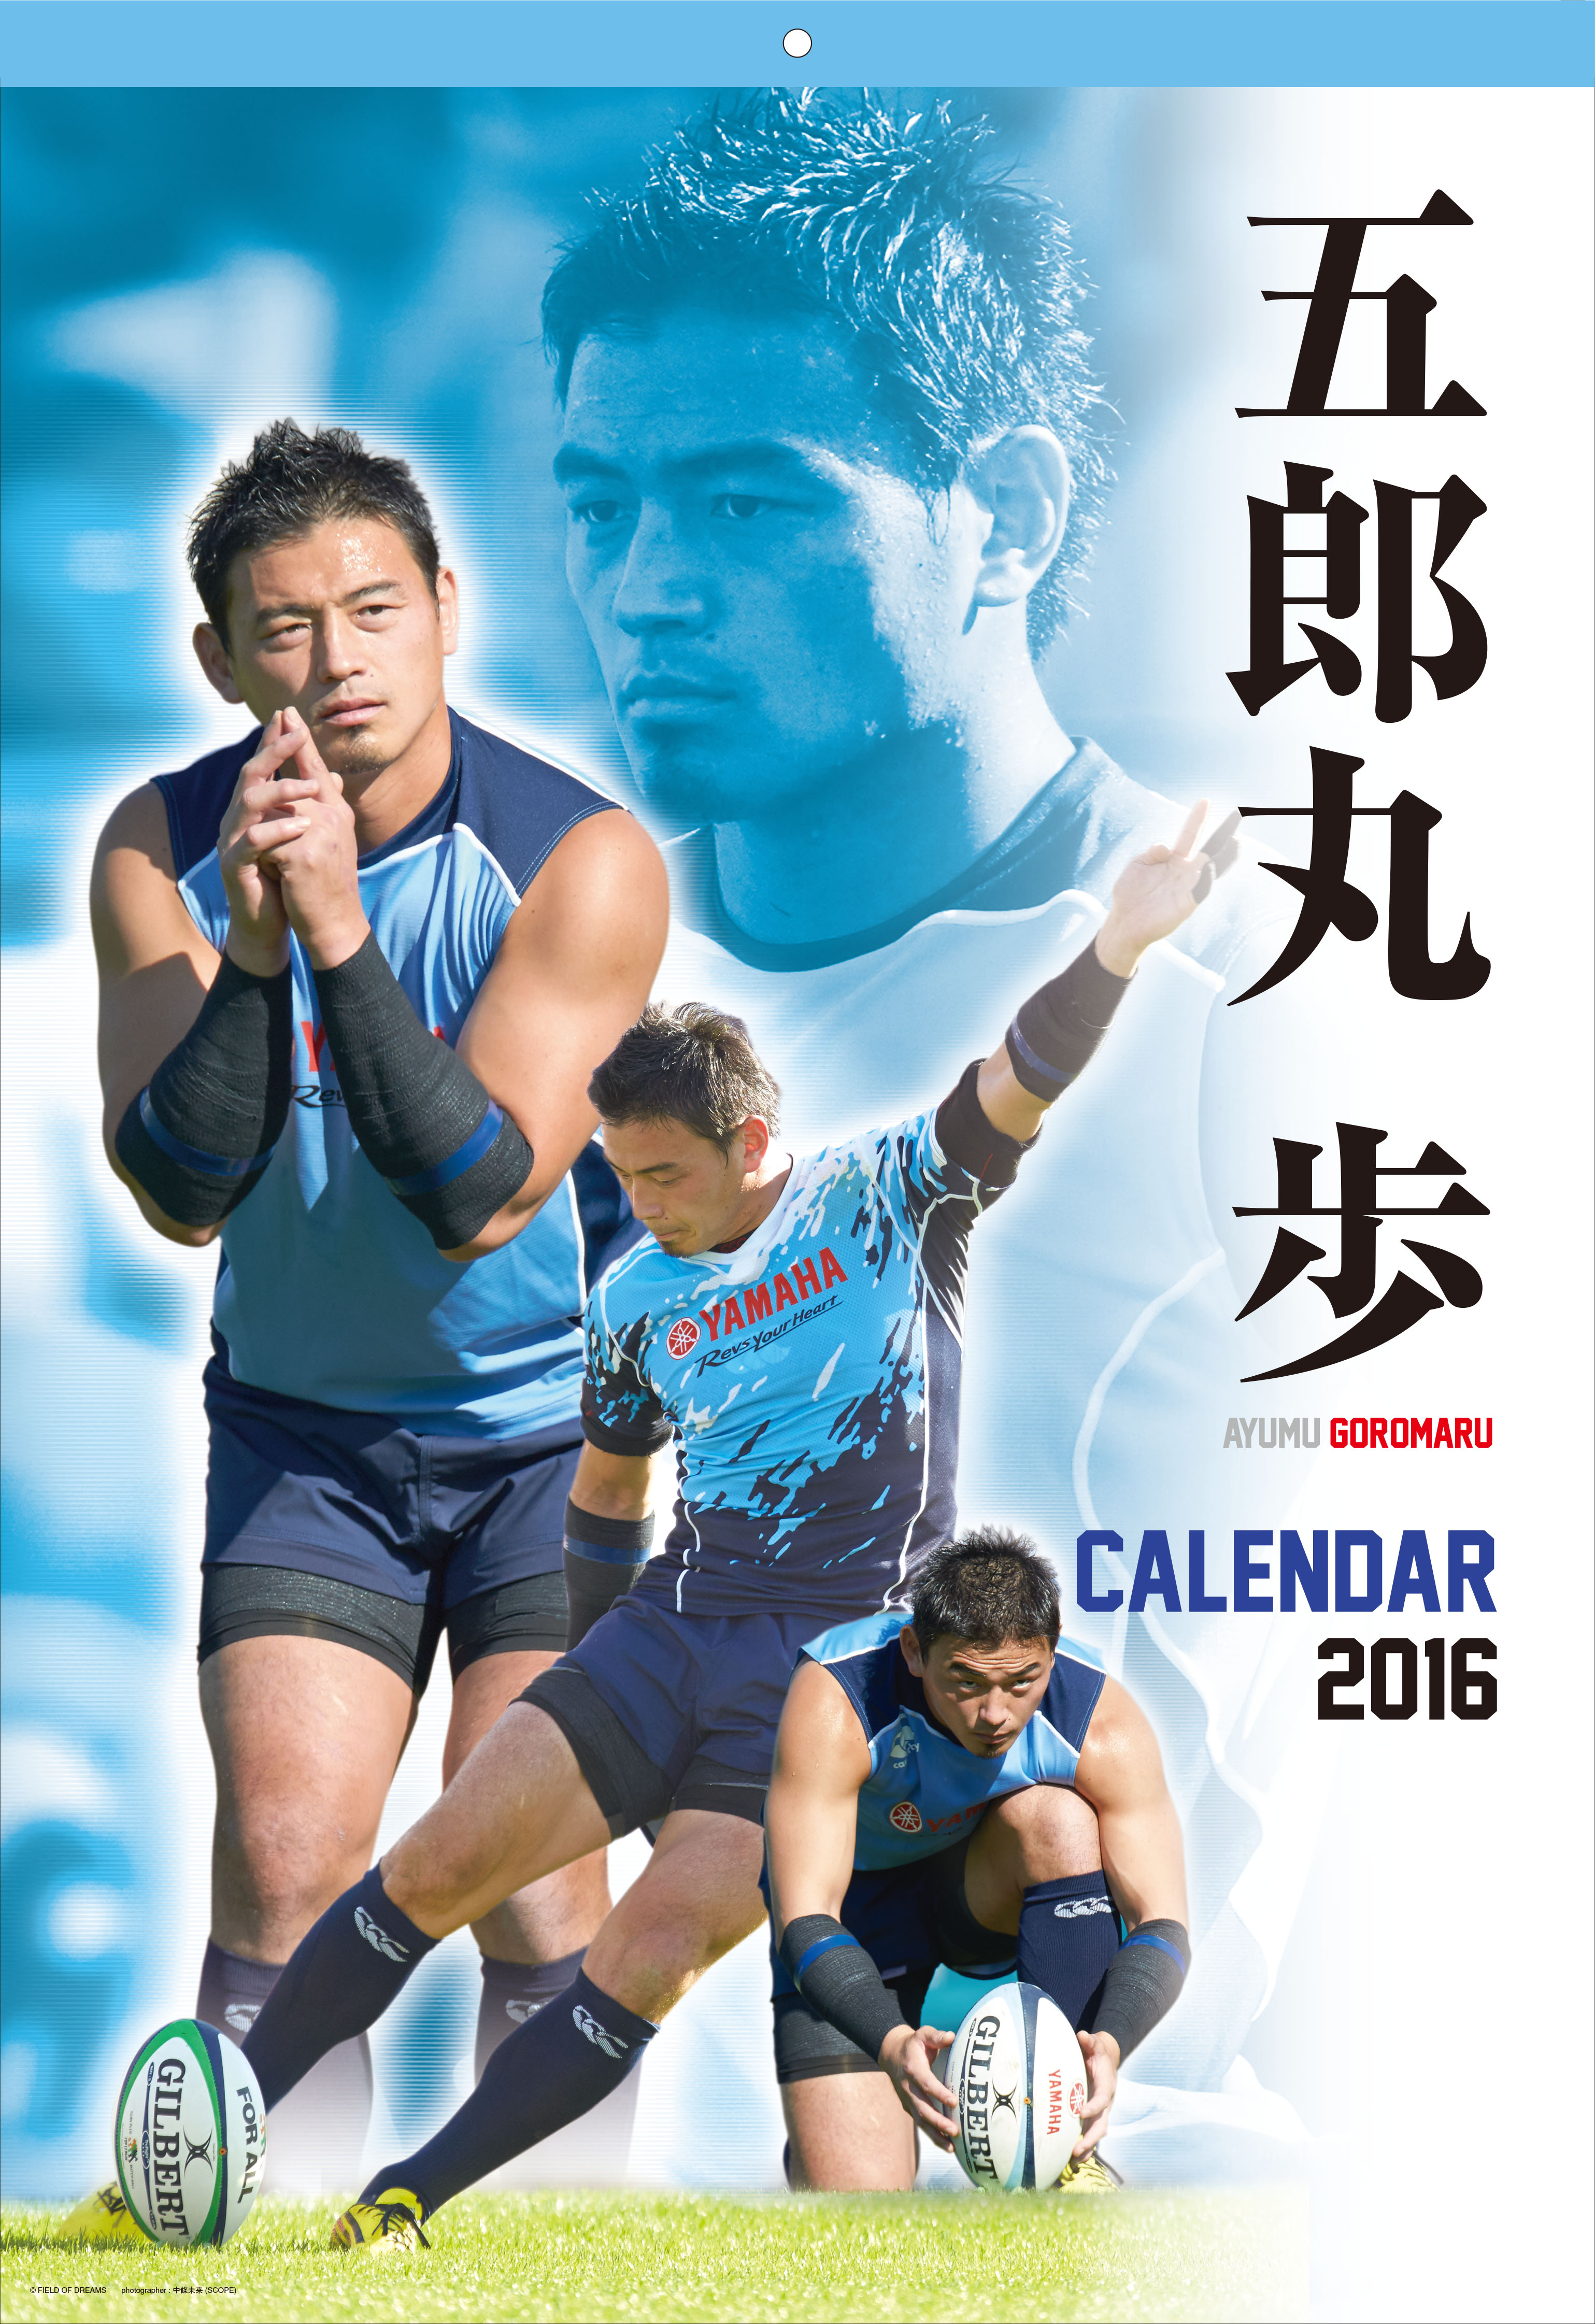 五郎丸歩カレンダー16 緊急発売 12月23日 水 より一斉発売 株式会社エンスカイのプレスリリース